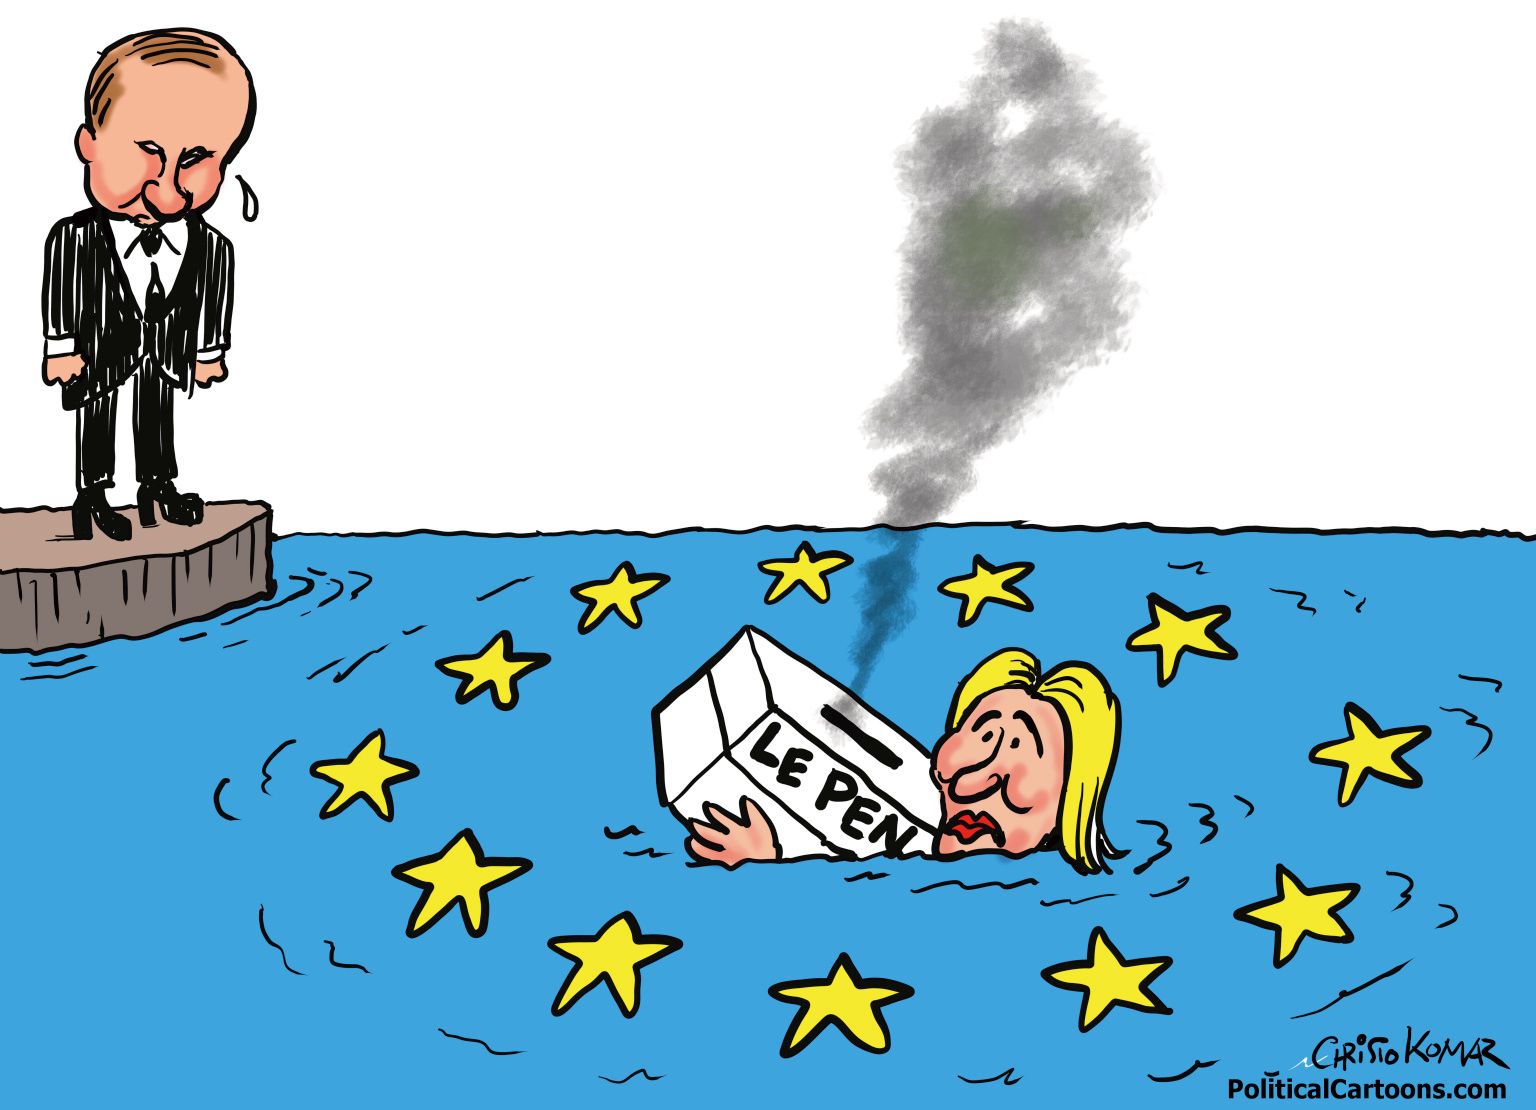 Putin and le Pen